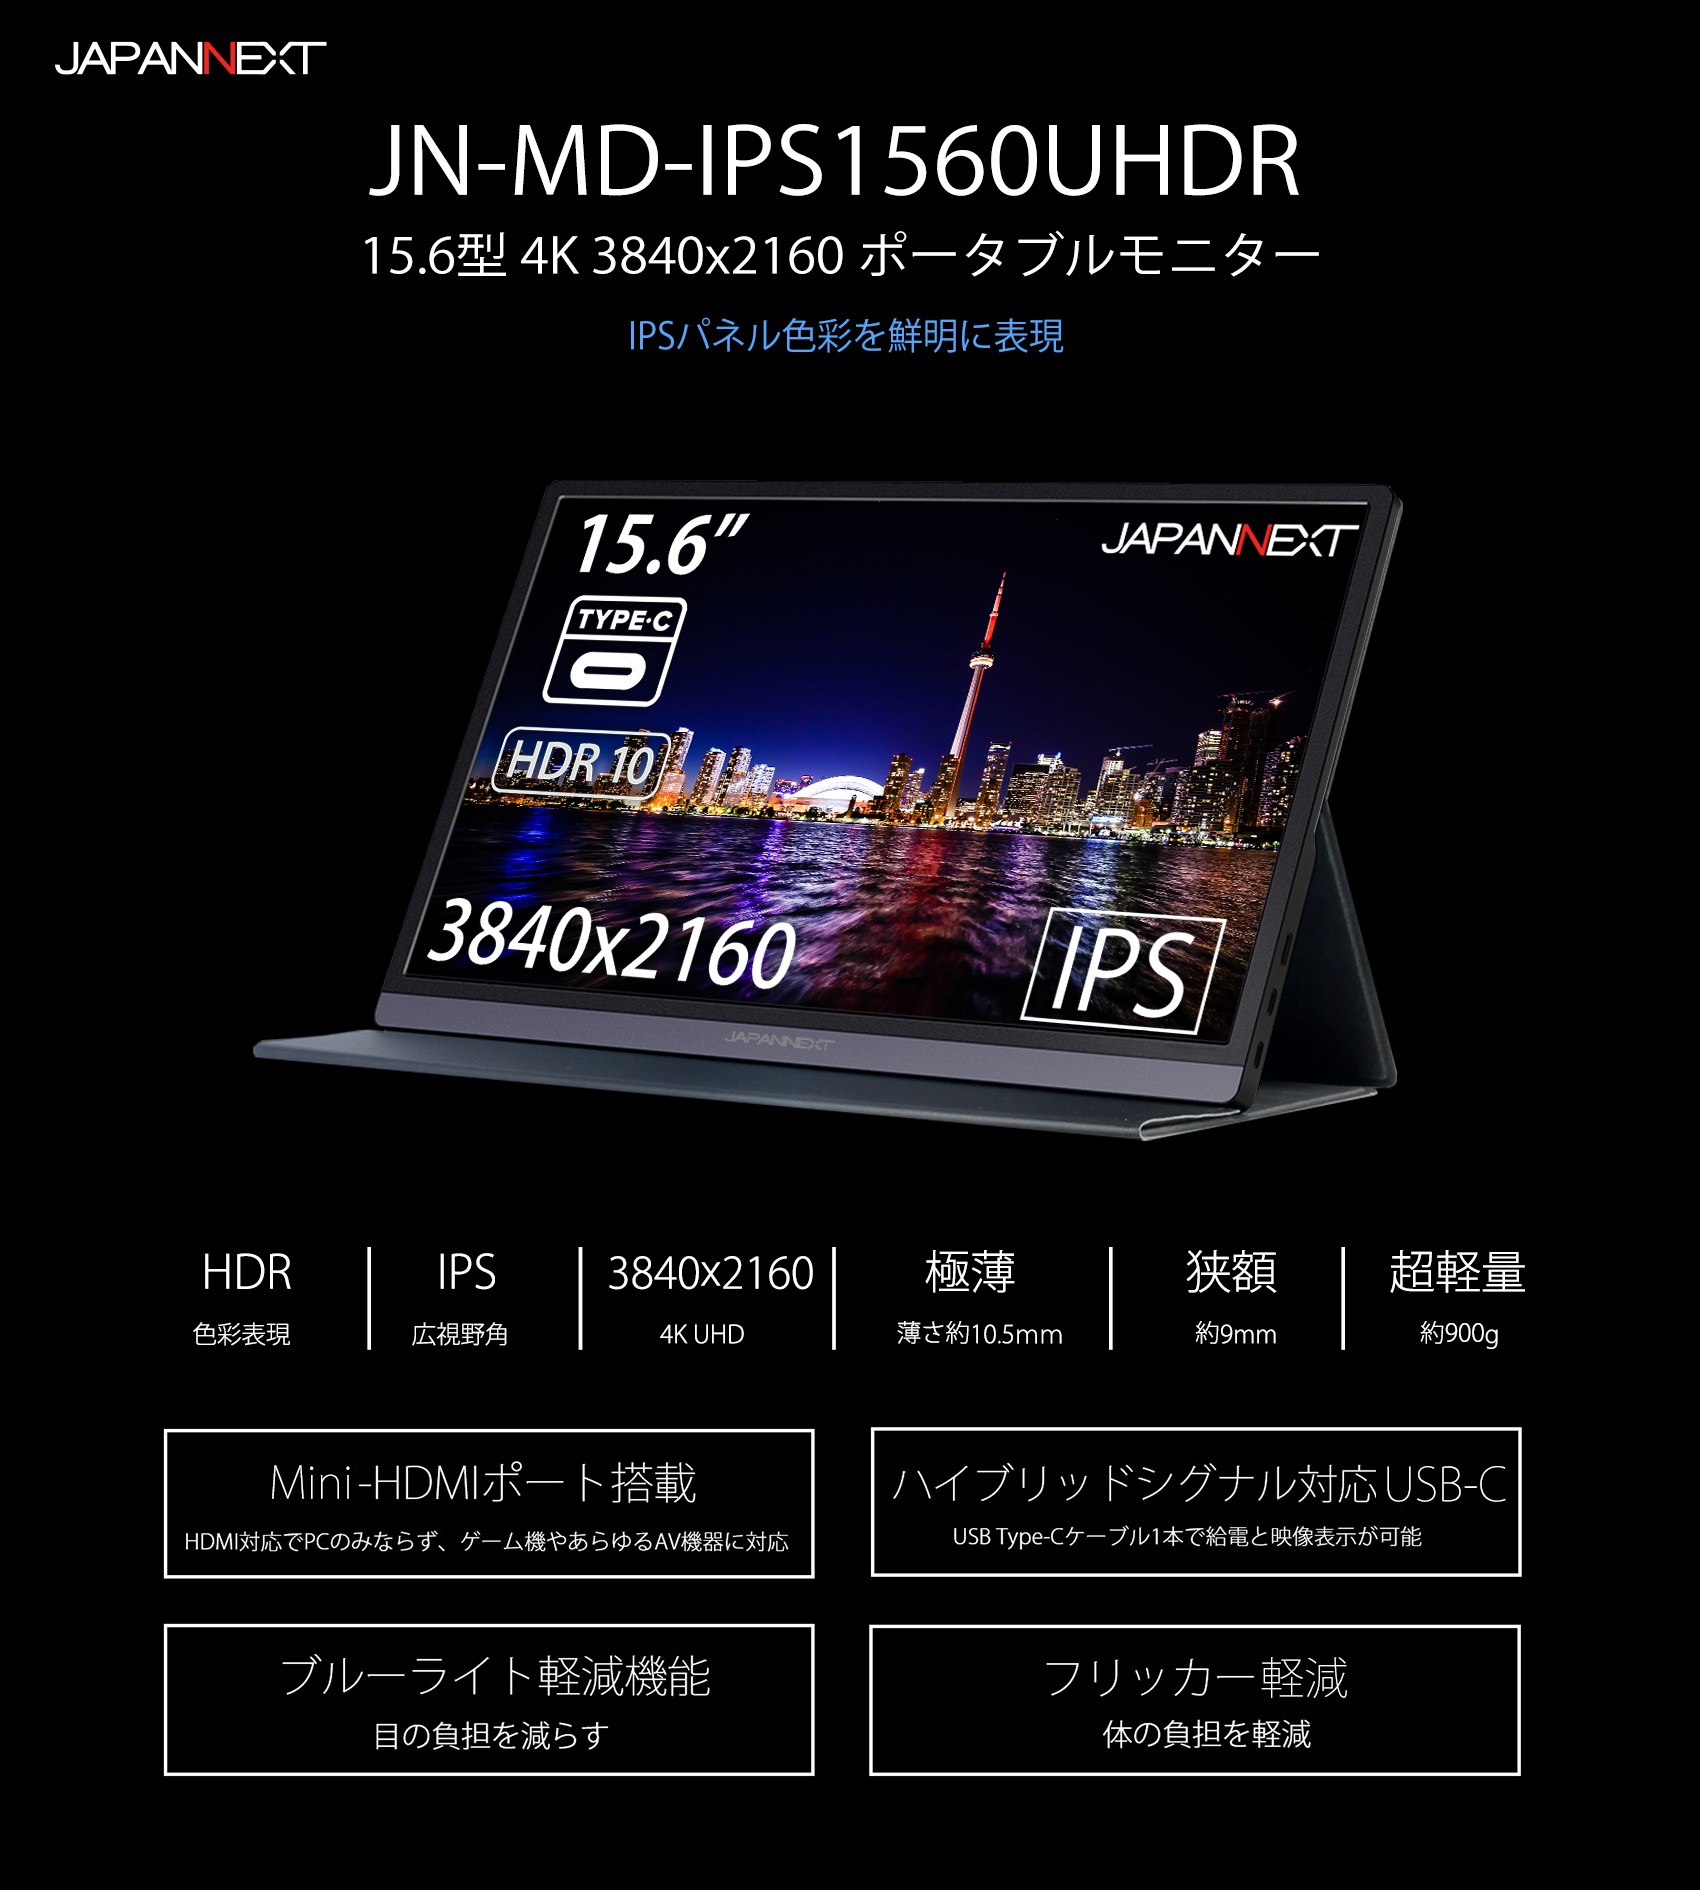 JAPANNEXT JN-MD-IPS1560UHDR (15.6型UHD モバイルディスプレイ / Type-C HDR対応 IPSパネル) –  JAPANNEXT 4K WQHDなど超解像度、ゲーミング、曲面など特殊液晶モニター